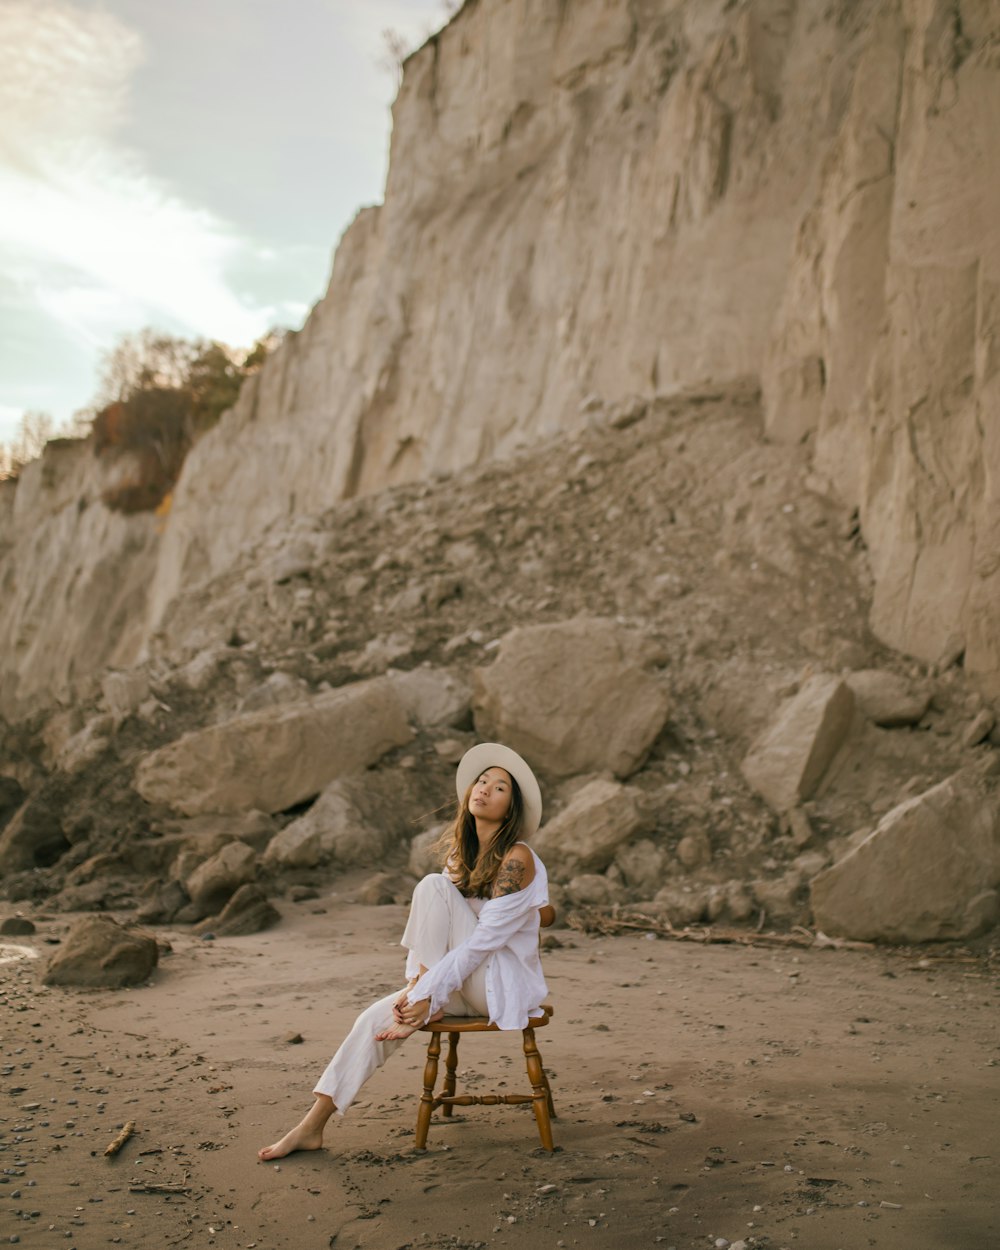 해변에서 나무 의자 위에 앉아 있는 여자